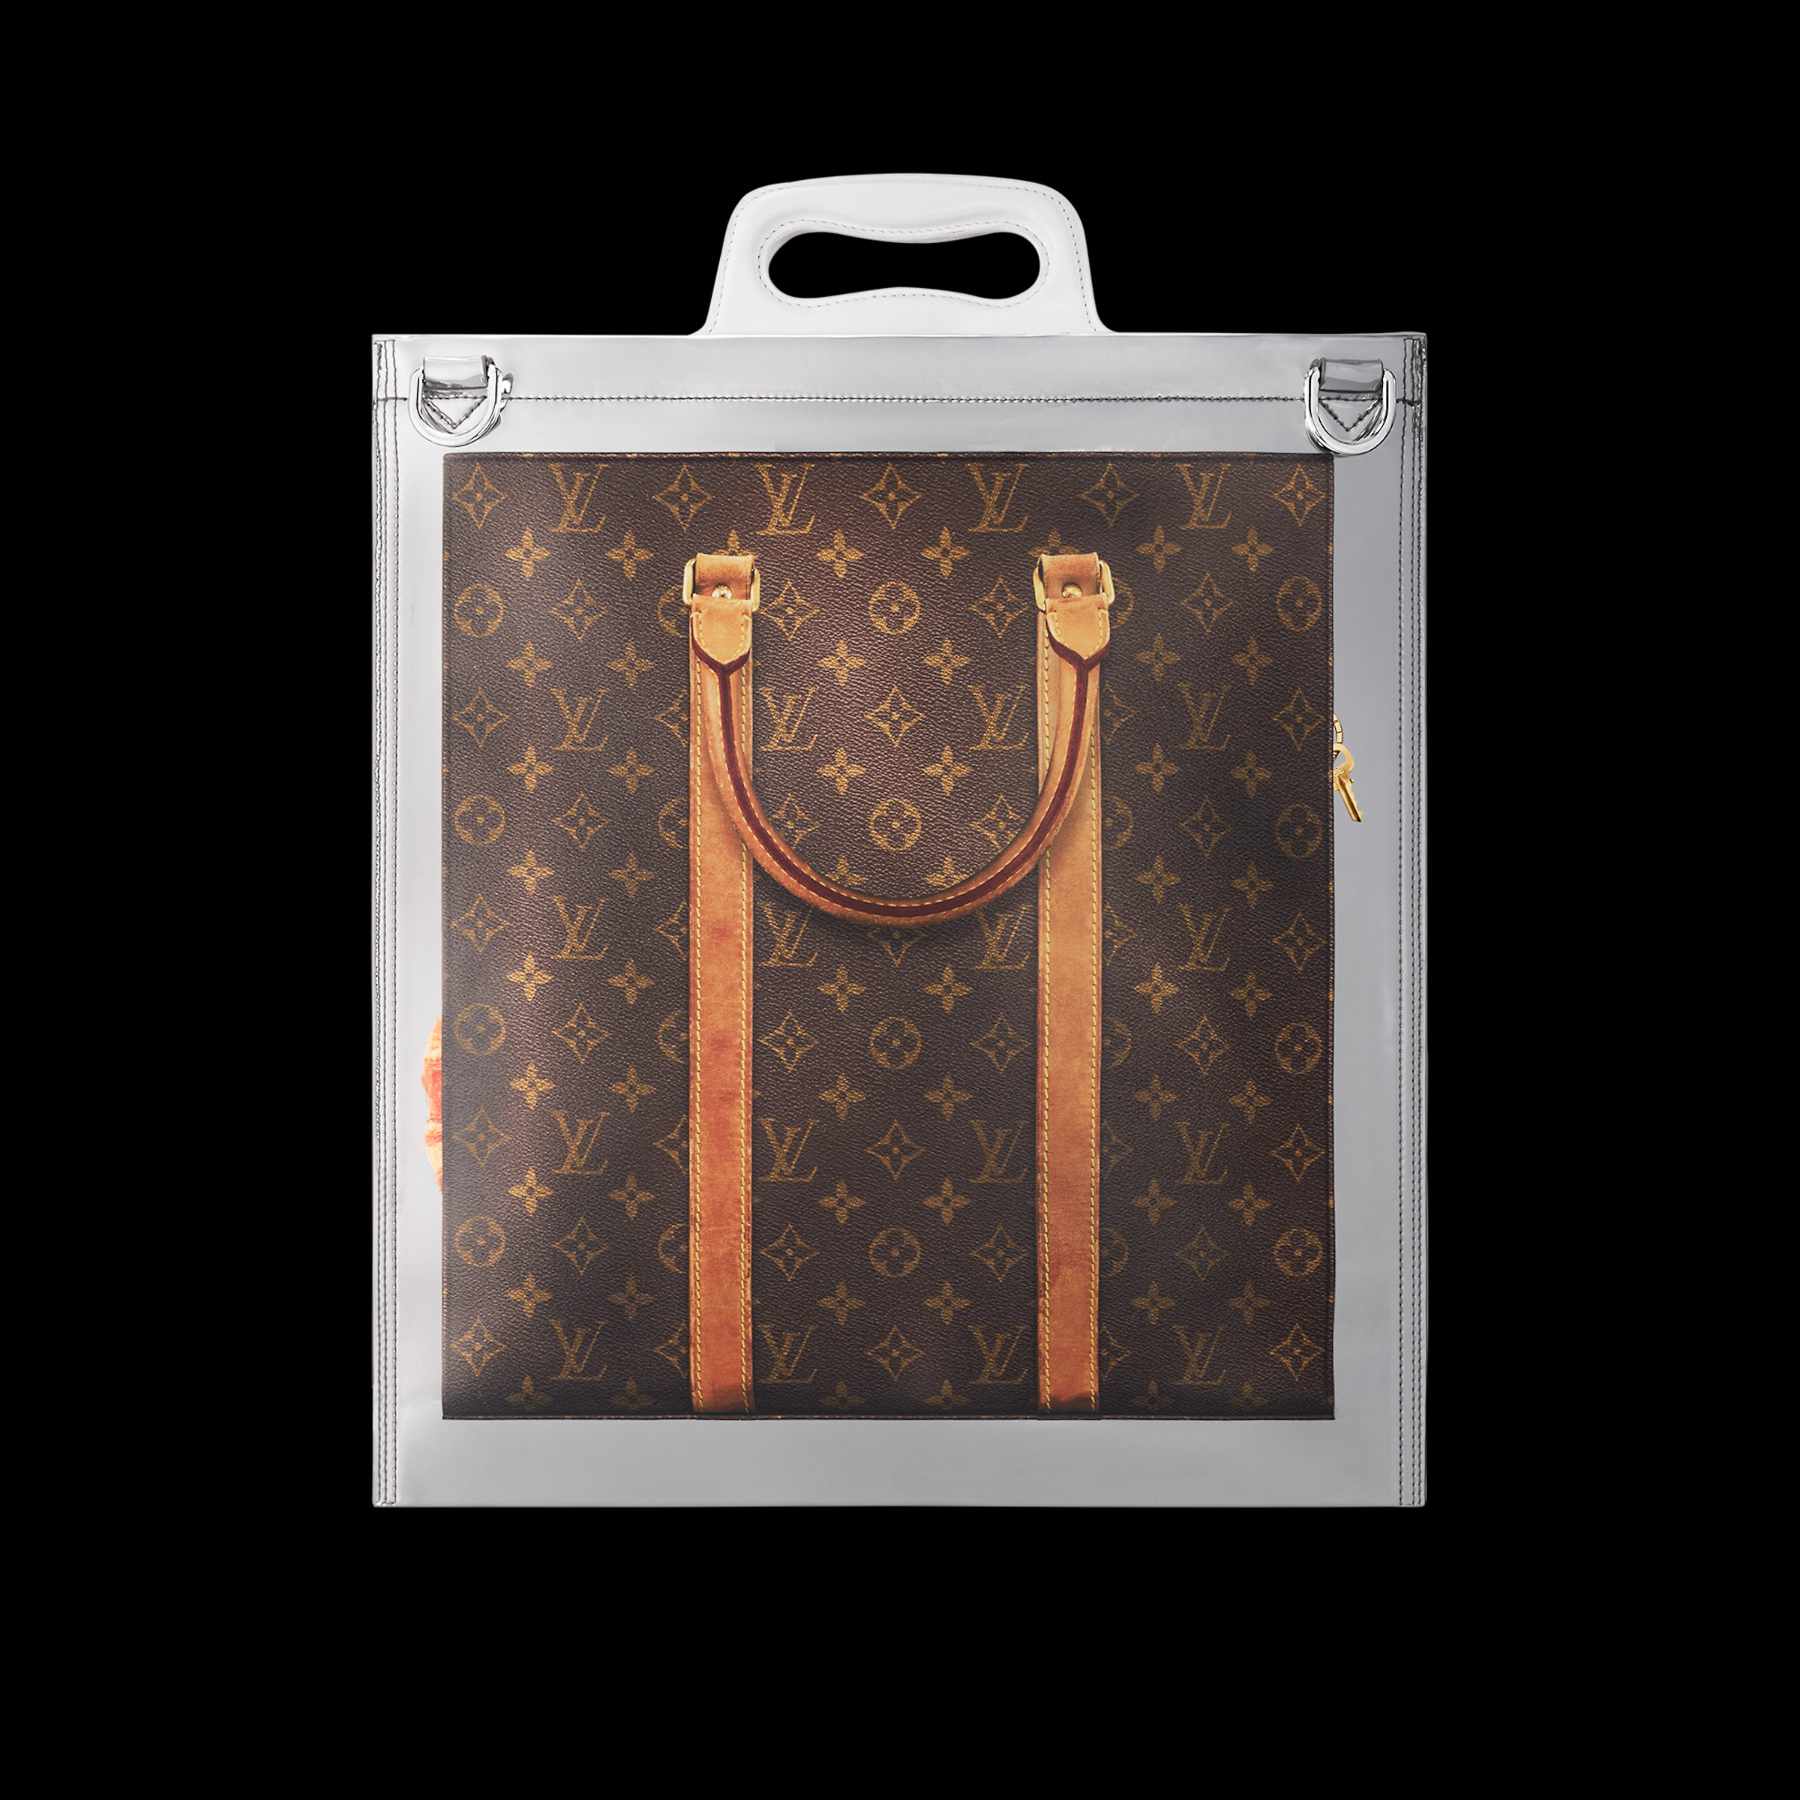 Louis Vuitton Plastic Bag 